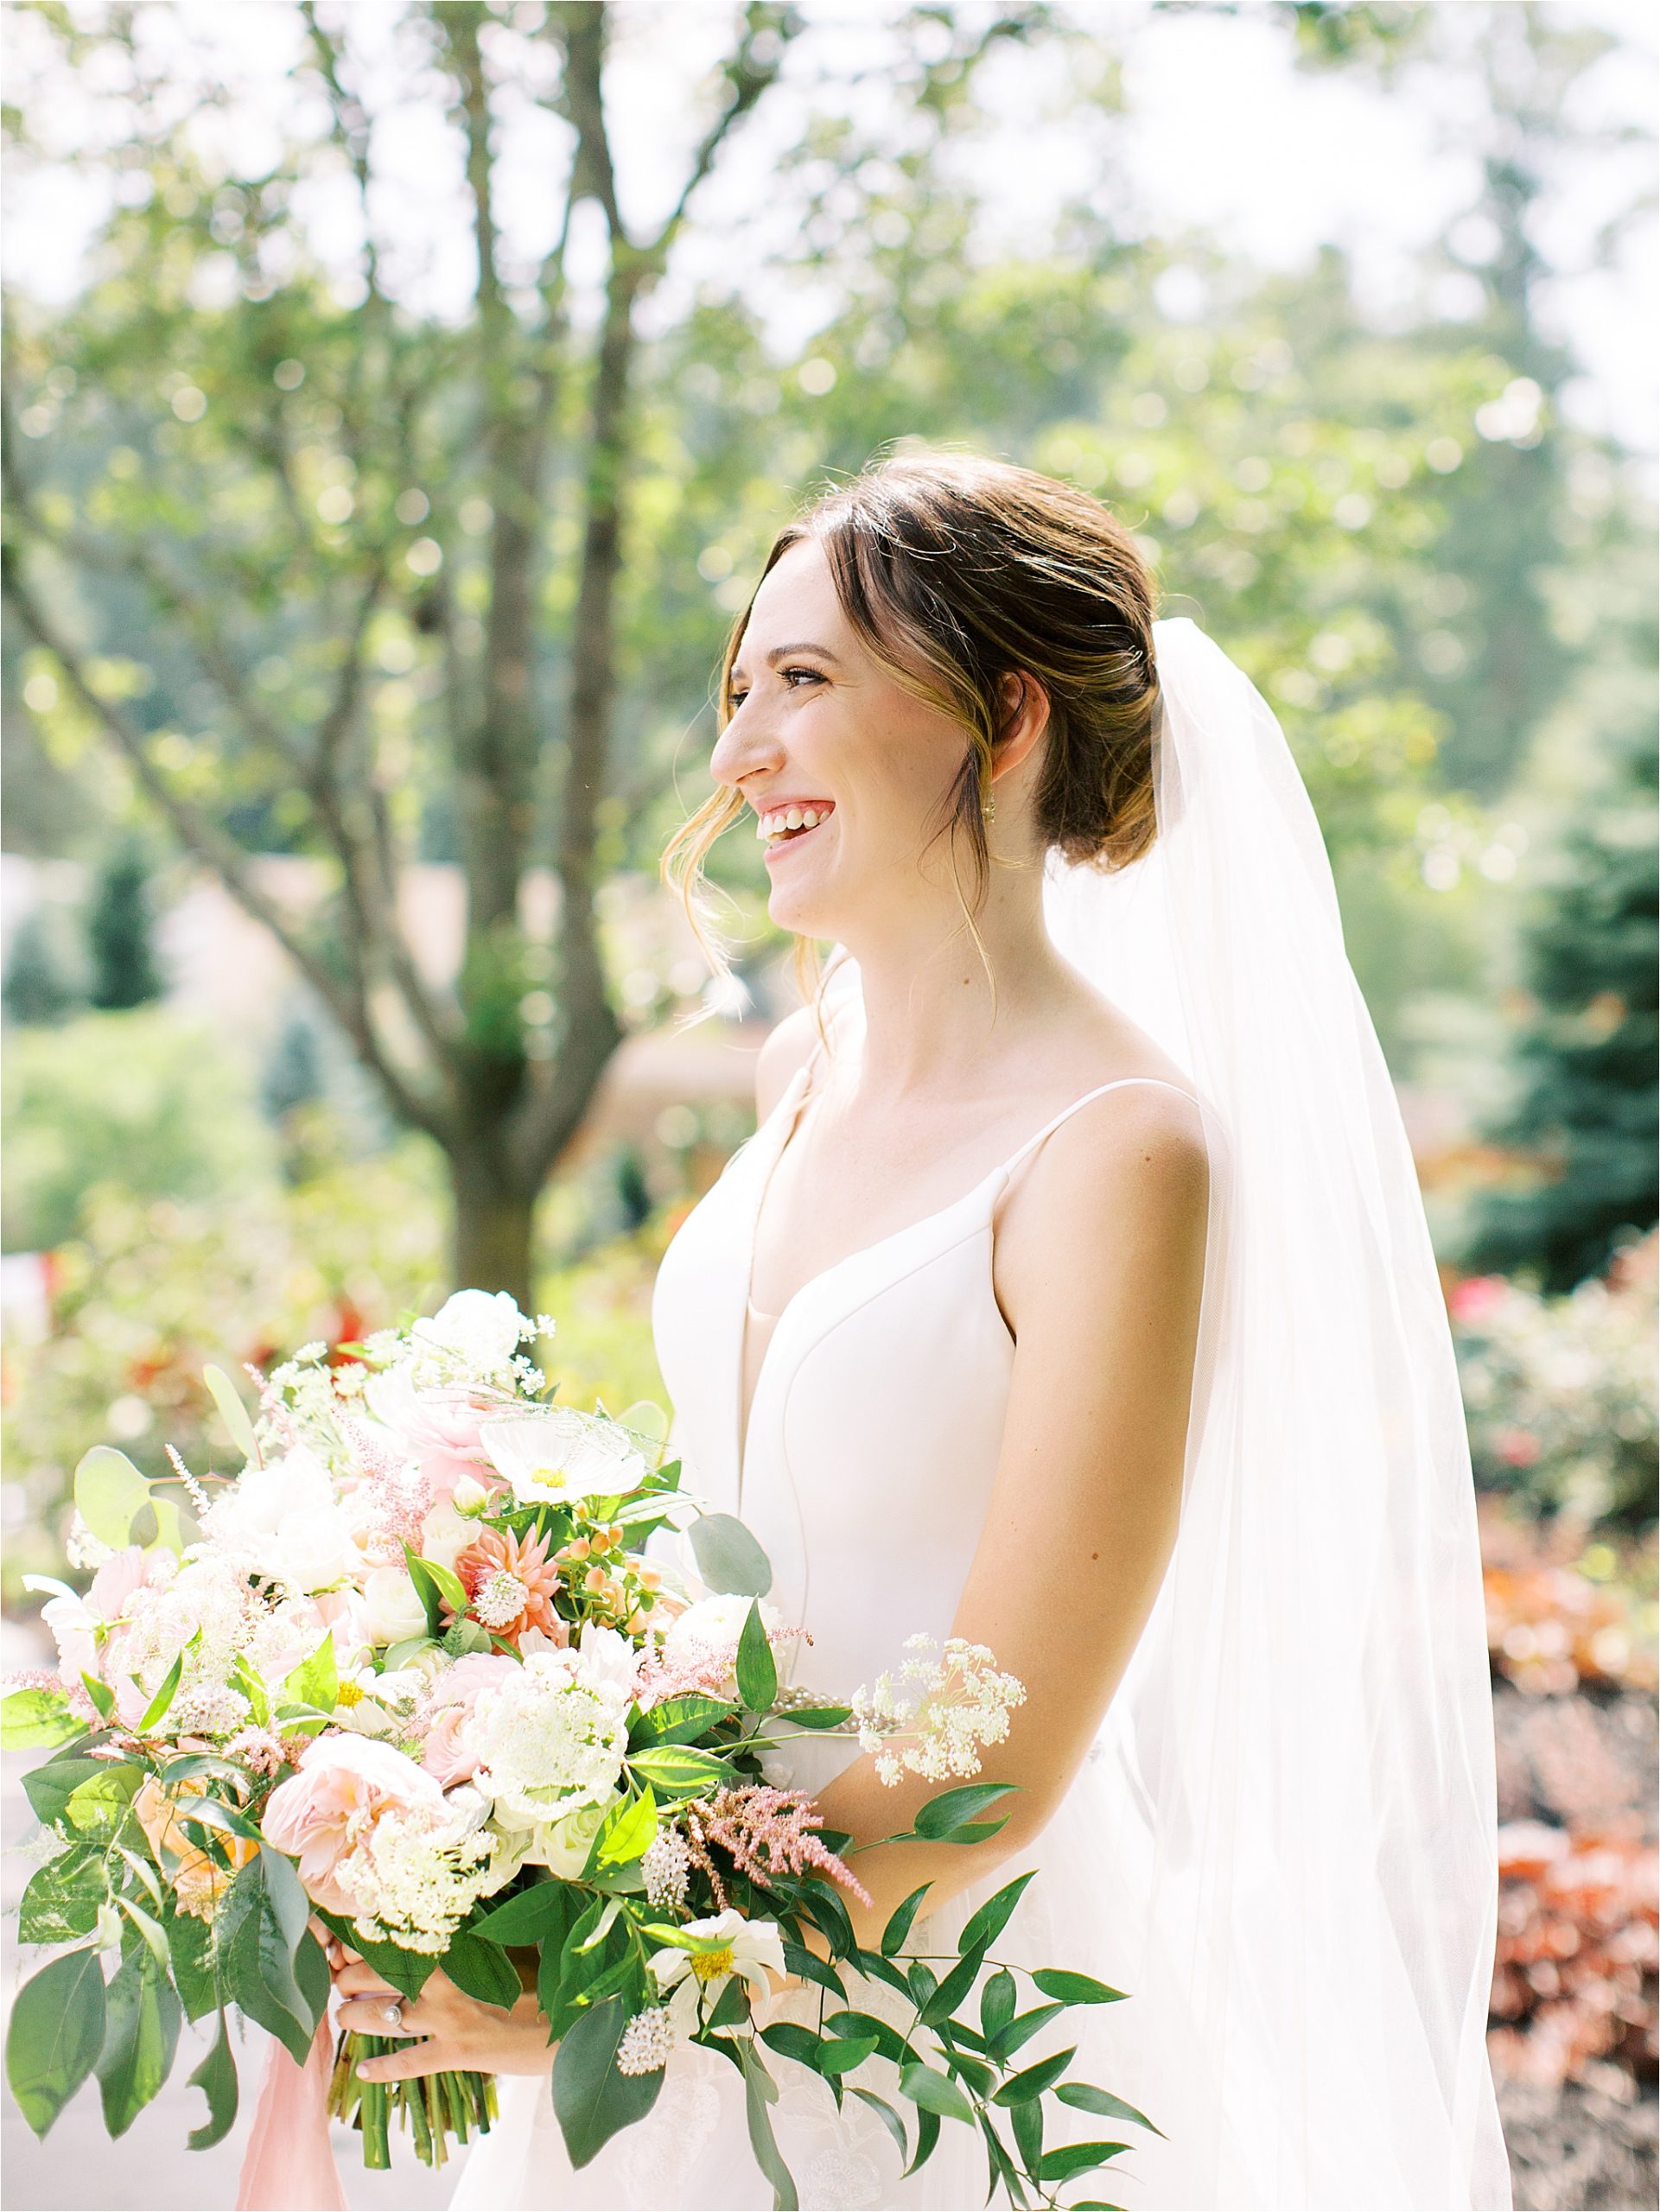 Bridal portrait with colorful wedding bouquet